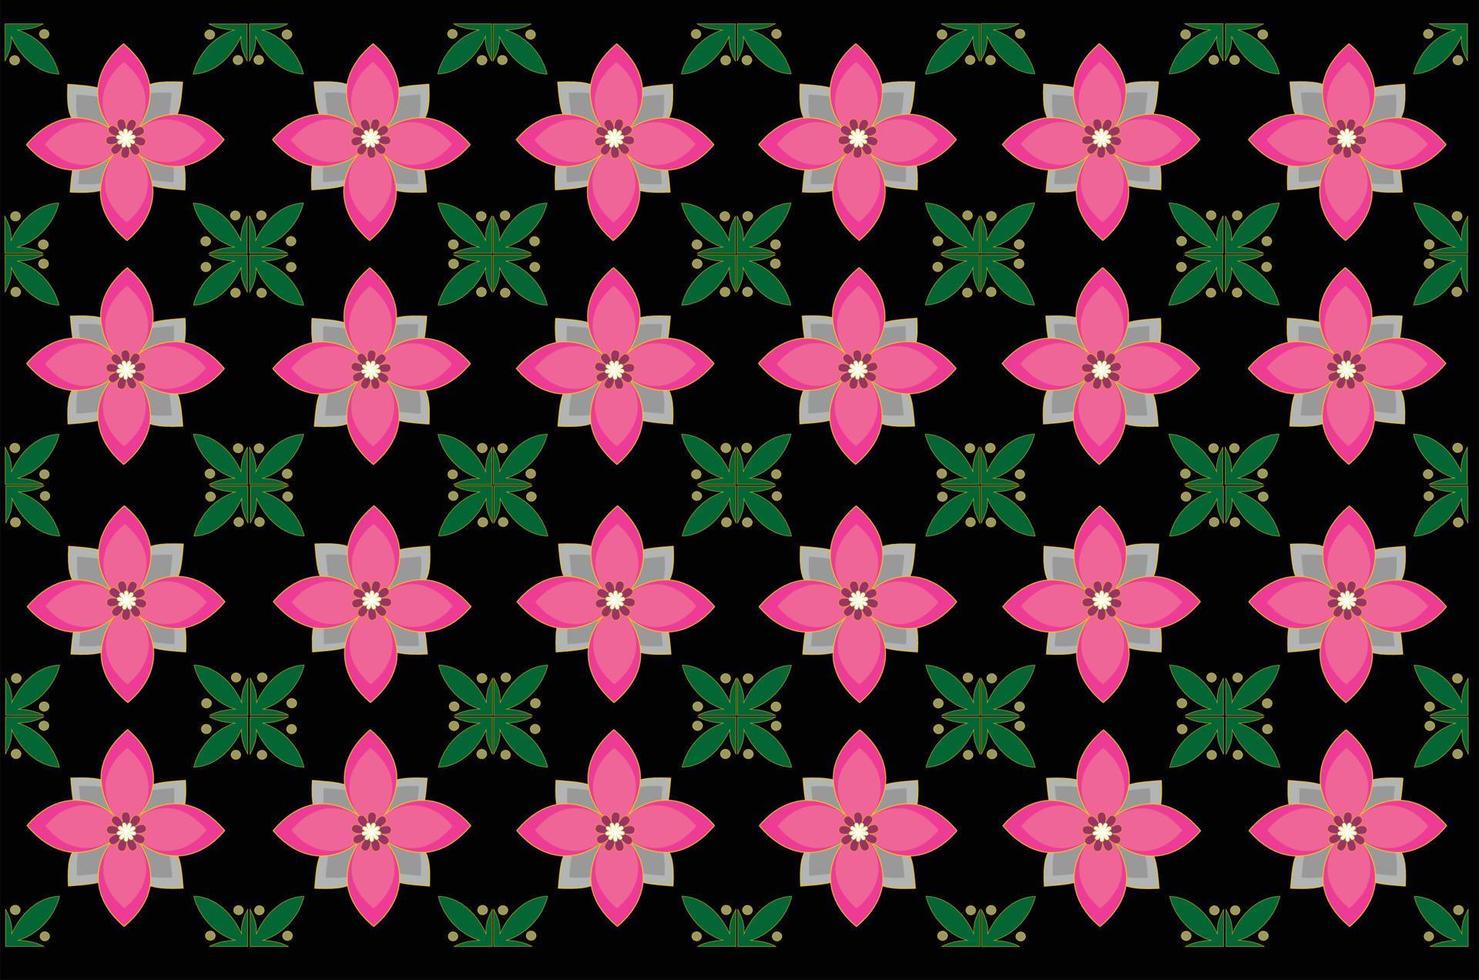 patrón de batik de diseño gráfico vectorial con motivos florales. diseños para estampar en tejidos, fundas y necesidades gráficas. plantillas modernas. vector